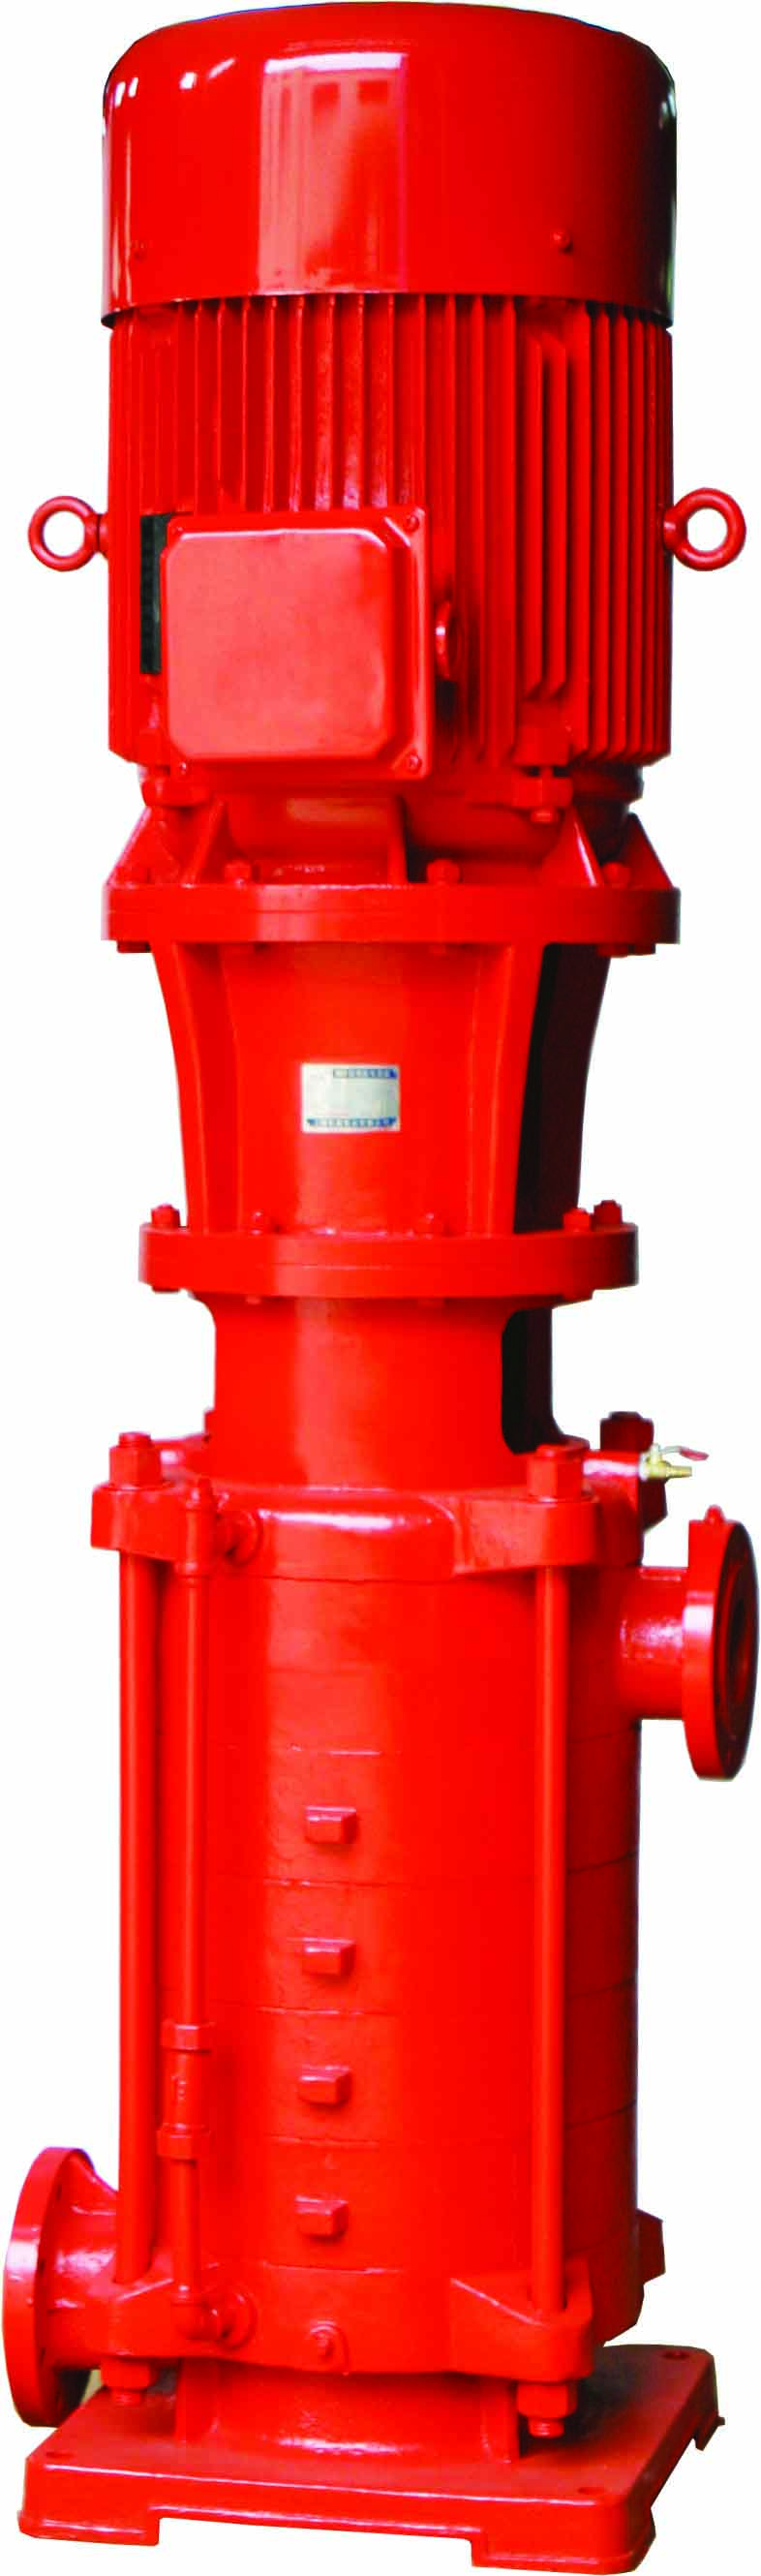 XBD-DL 立式单吸多级离心消防泵用于消防系统